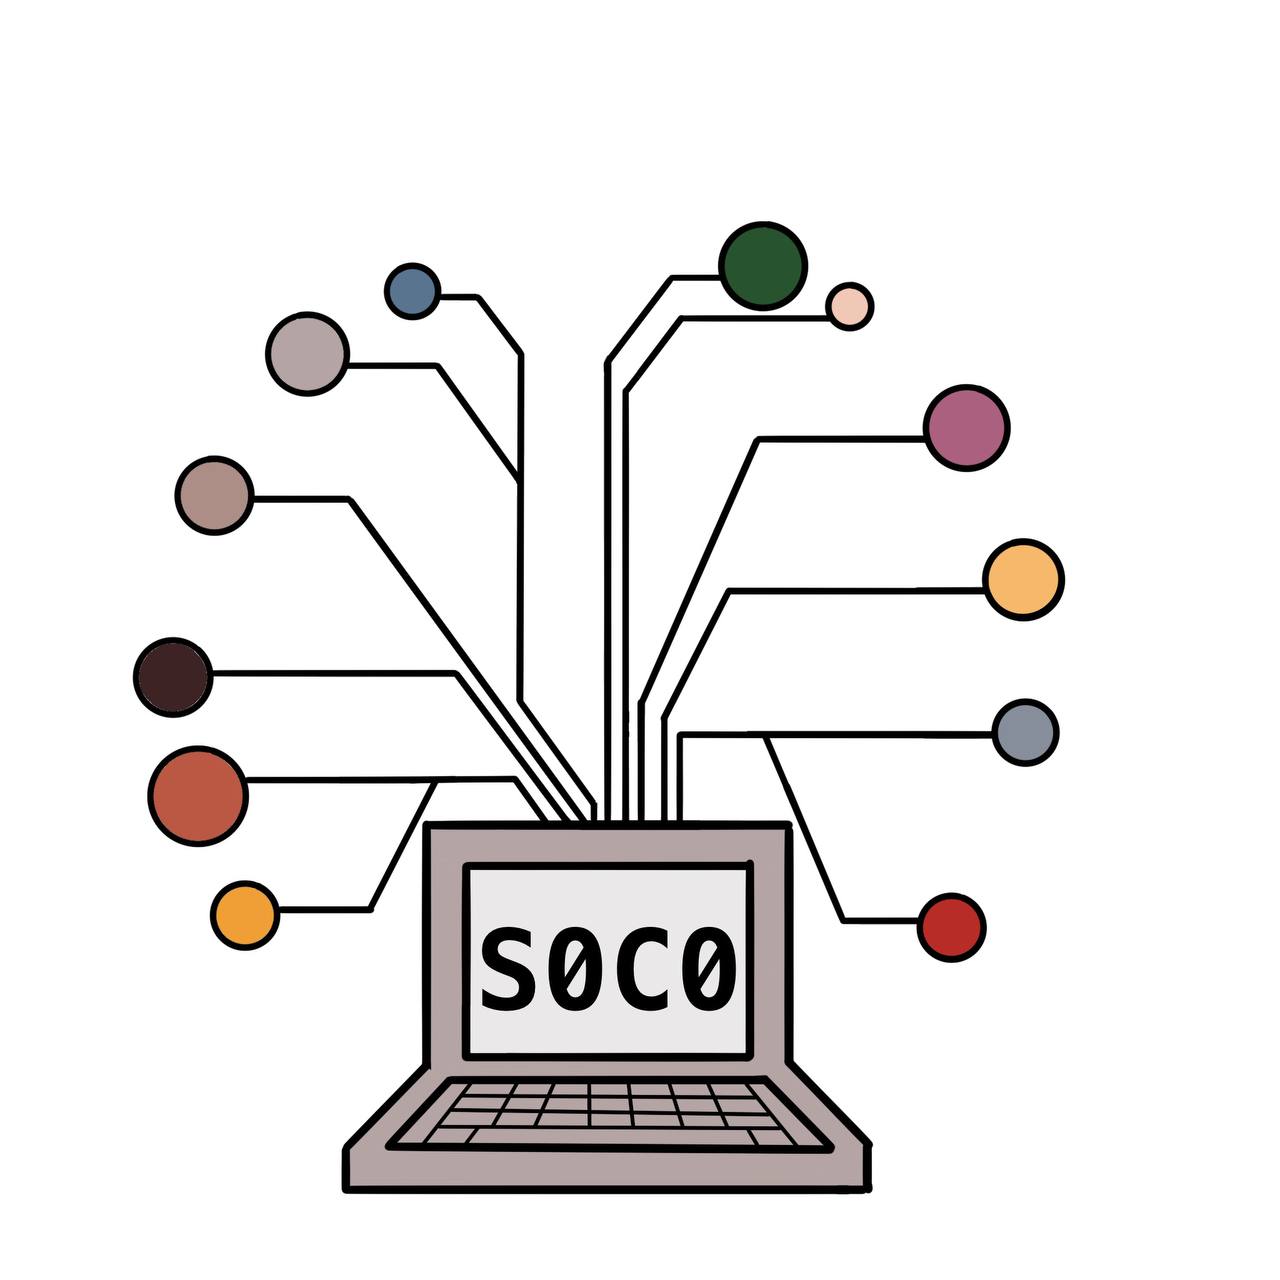 soco-1.jpg